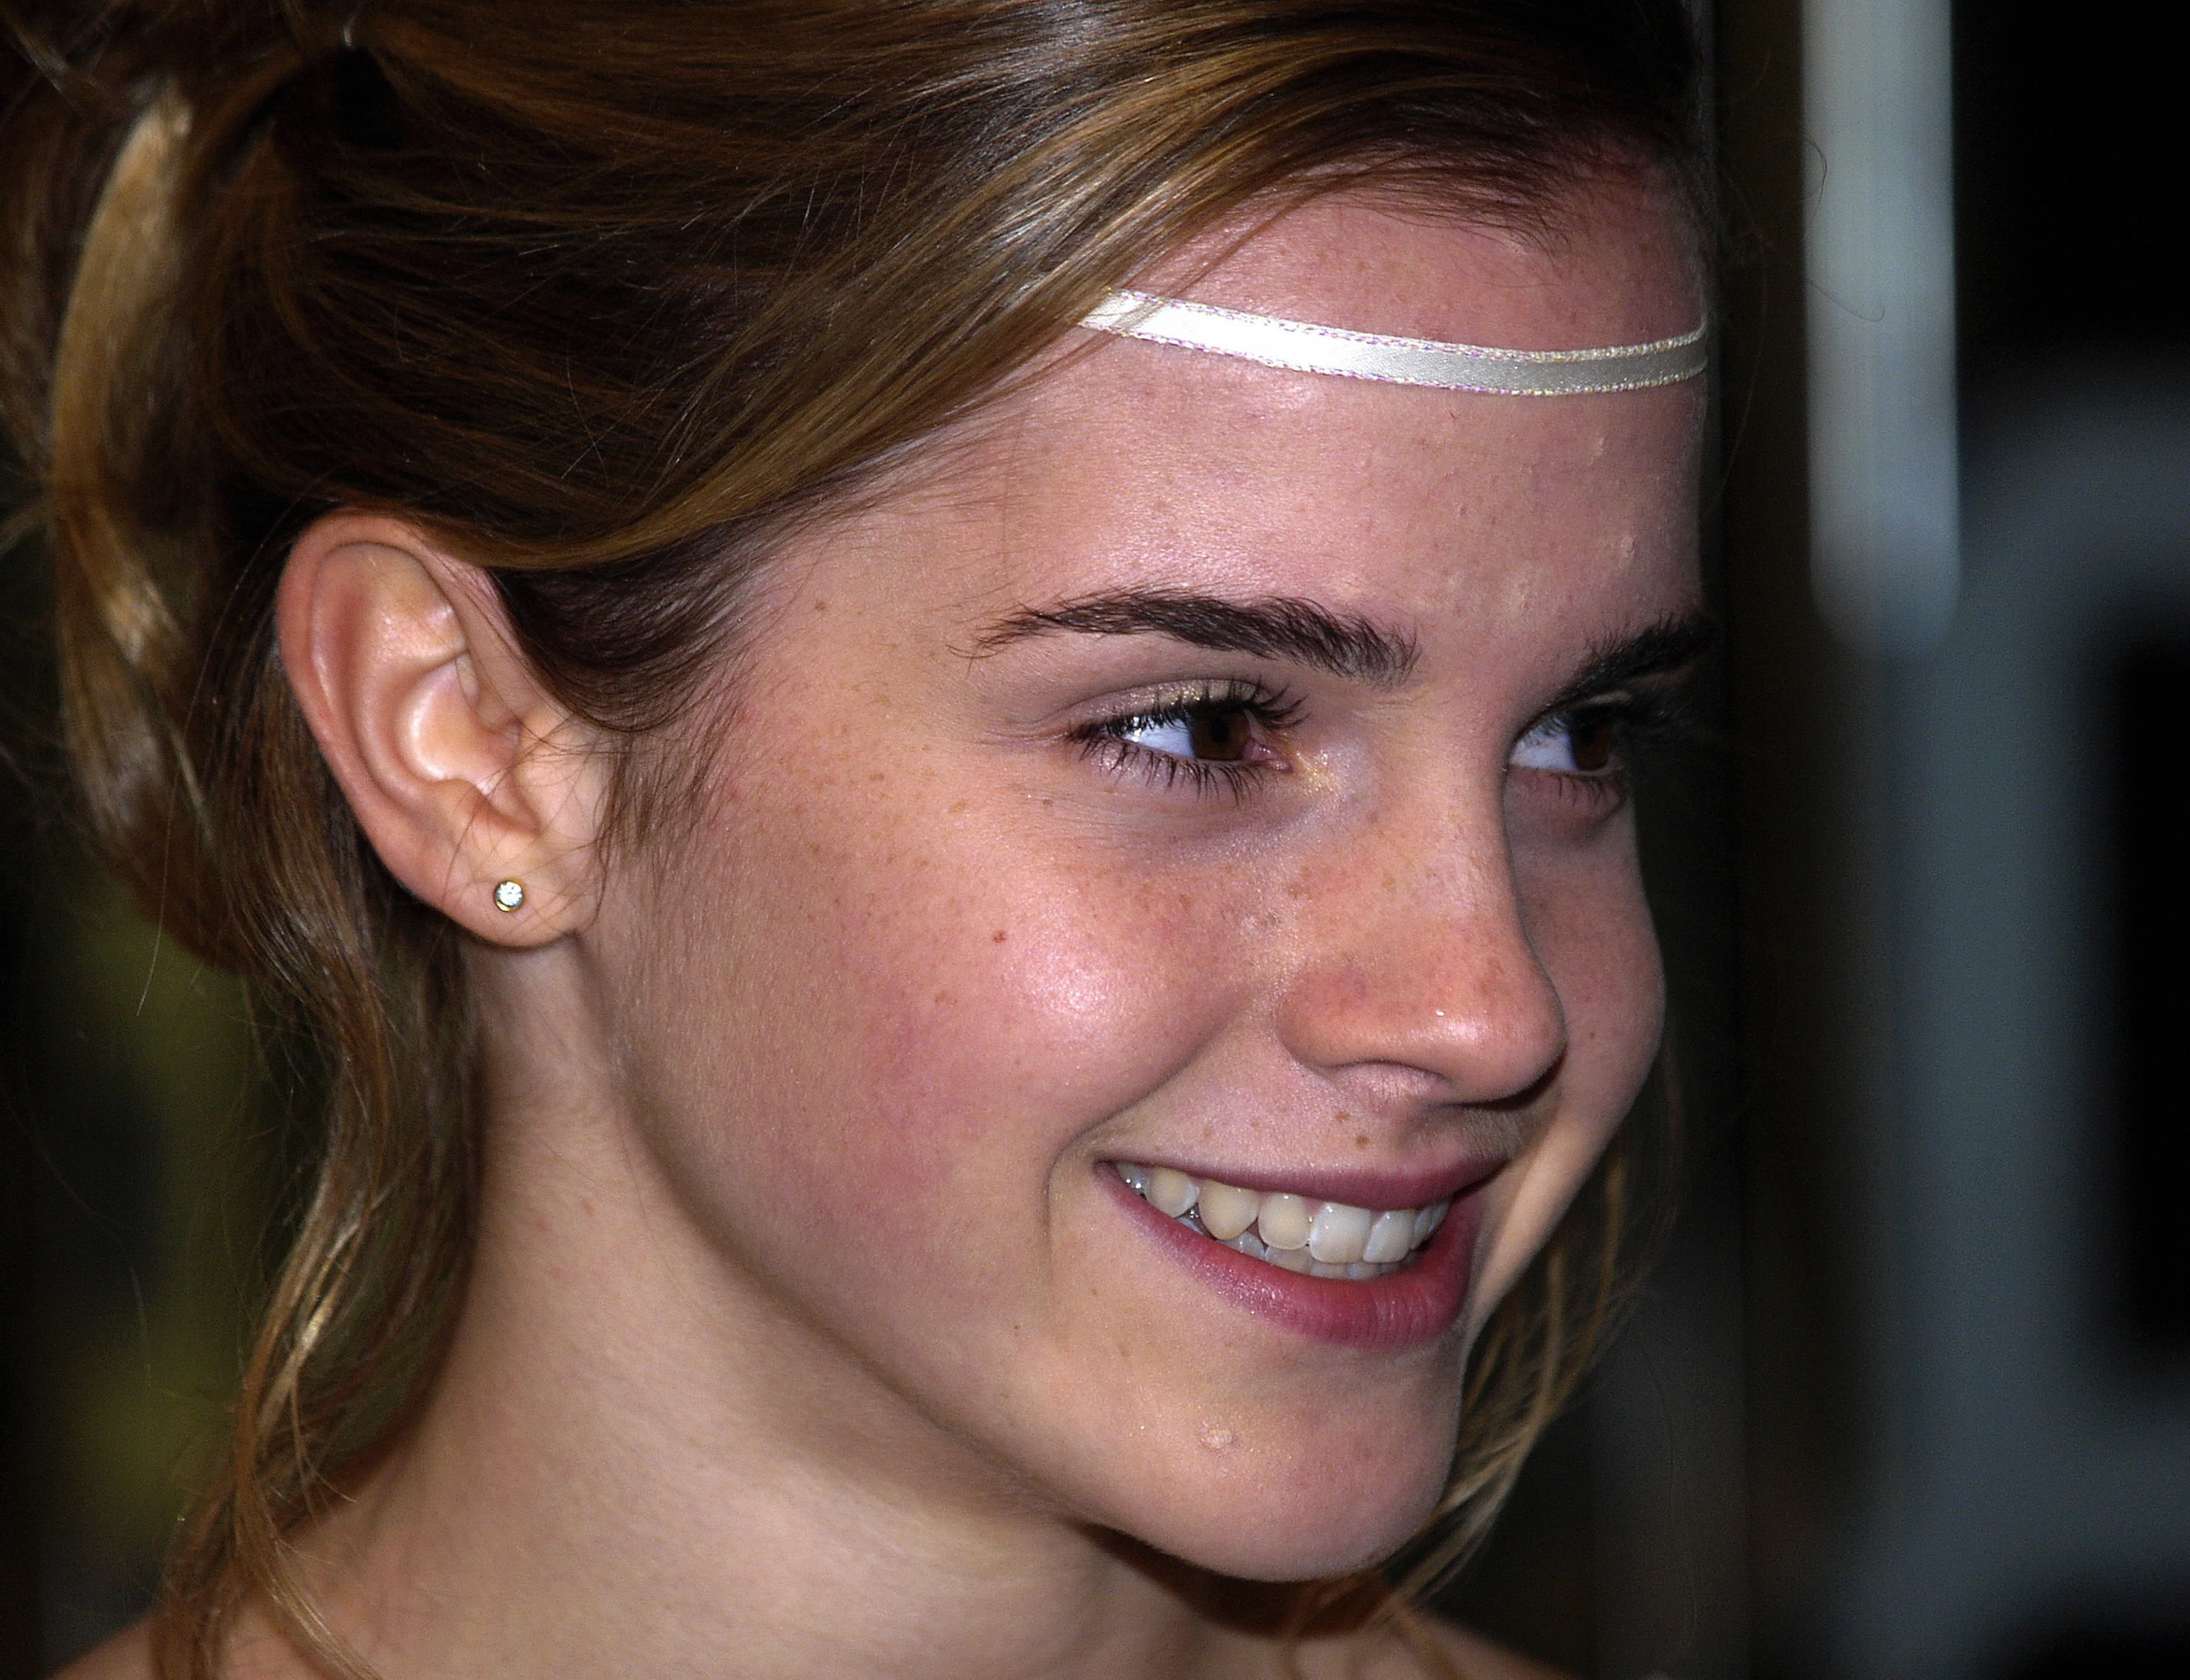 Digitalminx.com - Actresses - Emma Watson - Page 6.